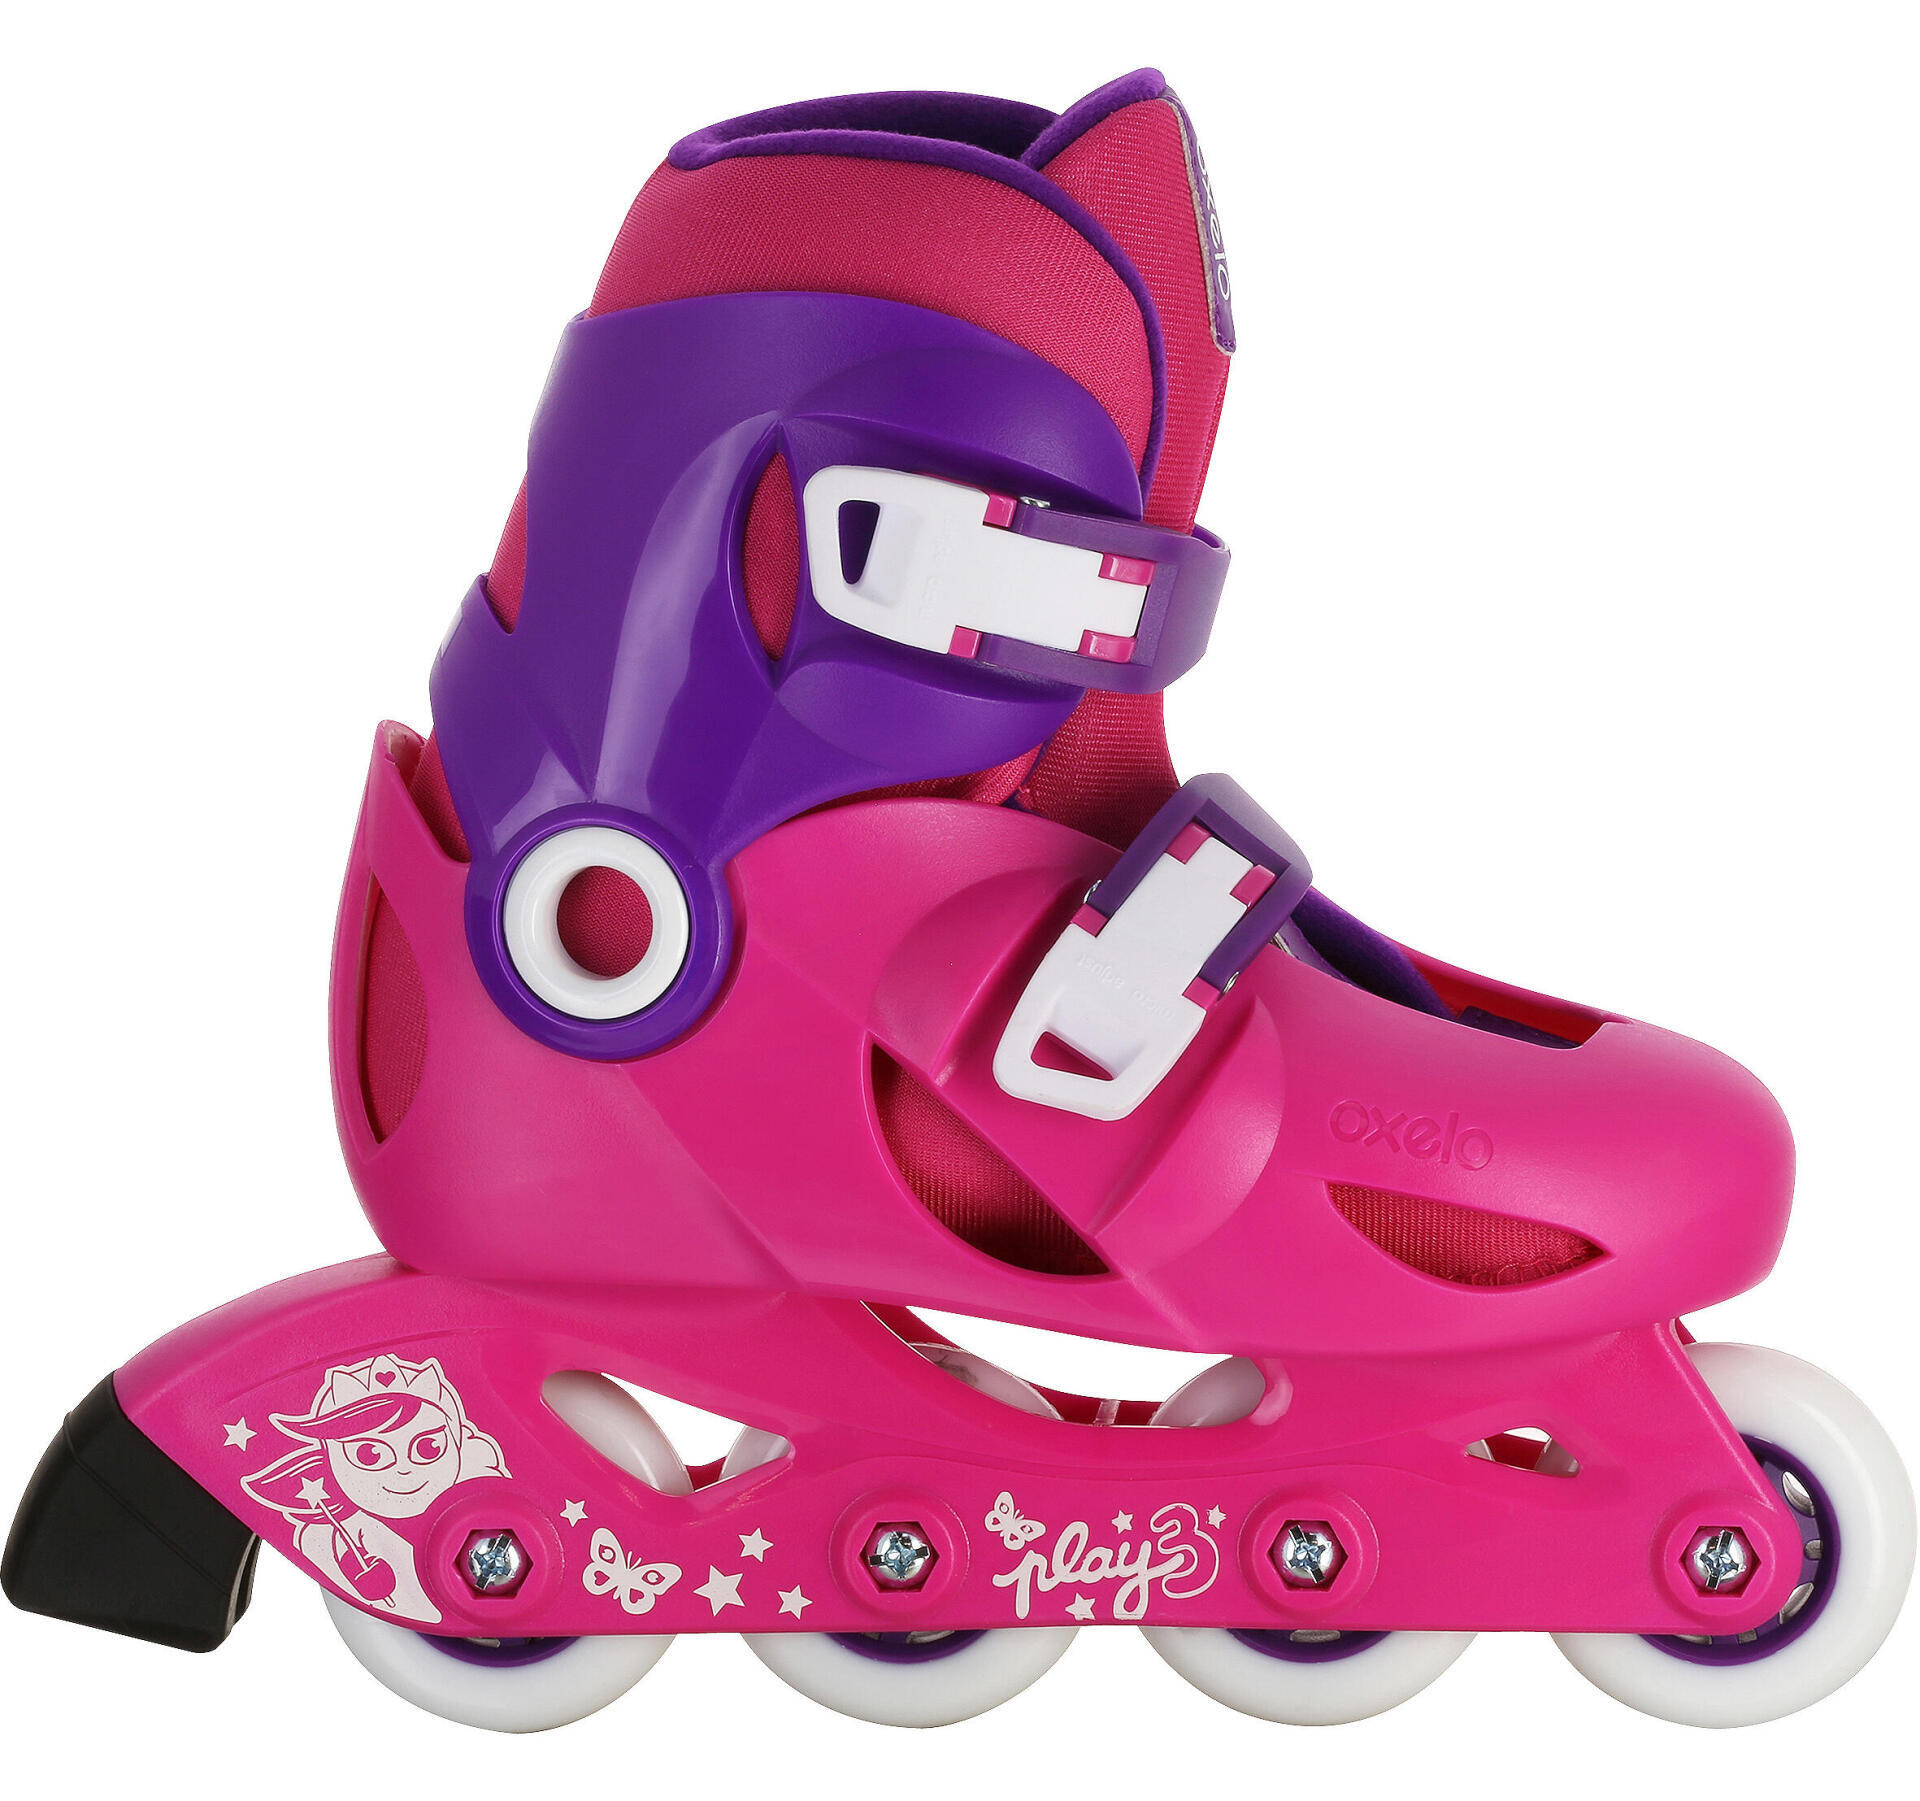 Como escolher os patins de criança?